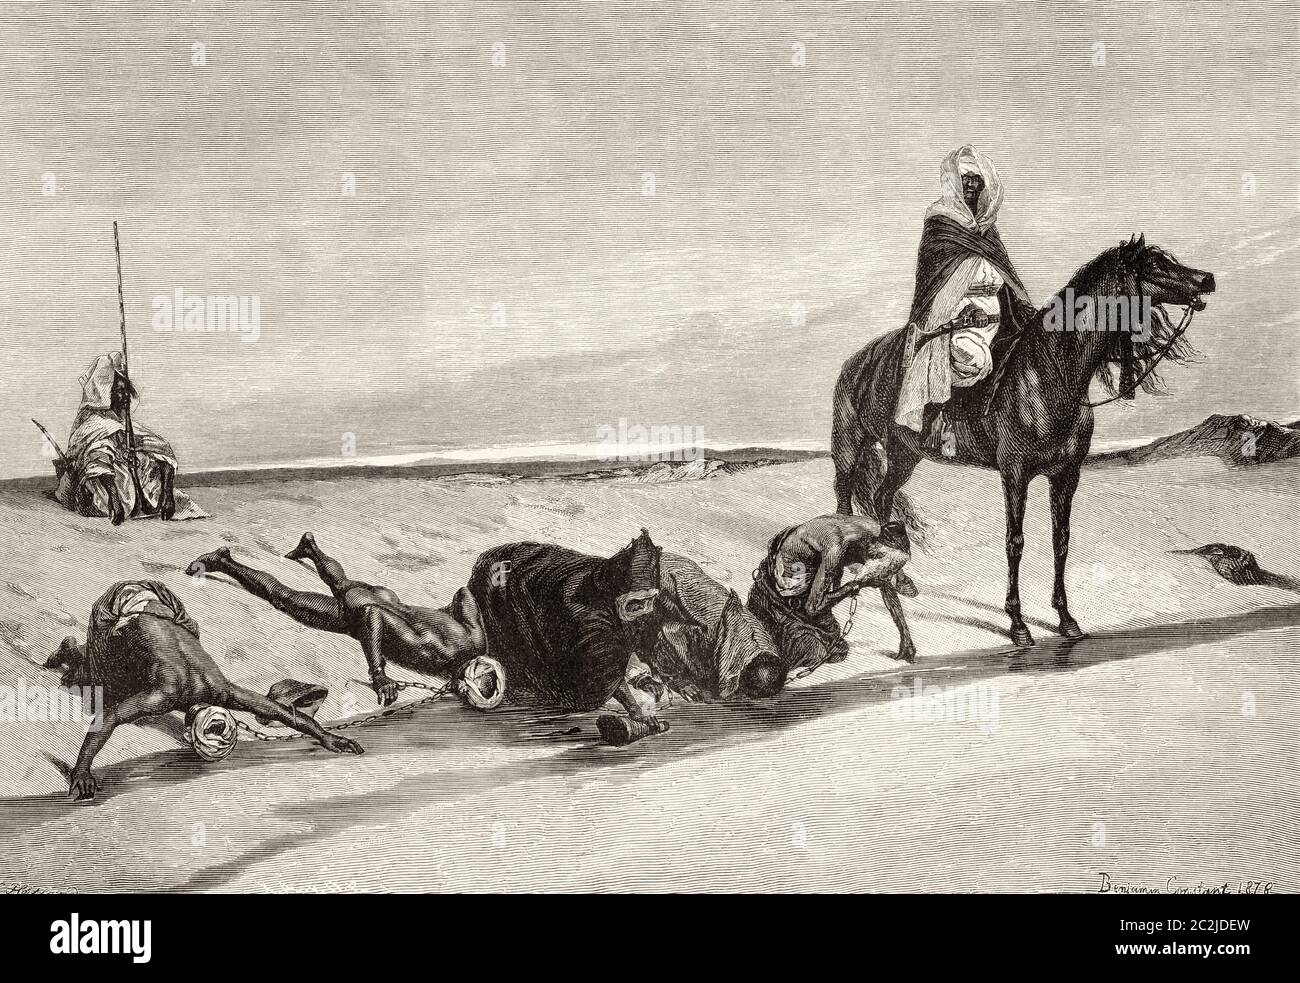 Caravane d'esclaves avec chameaux pendant un arrêt de repos, Grand désert du Sahara, Afrique. Illustration gravée du XIXe siècle, El Mundo Ilustrado 1880 Banque D'Images